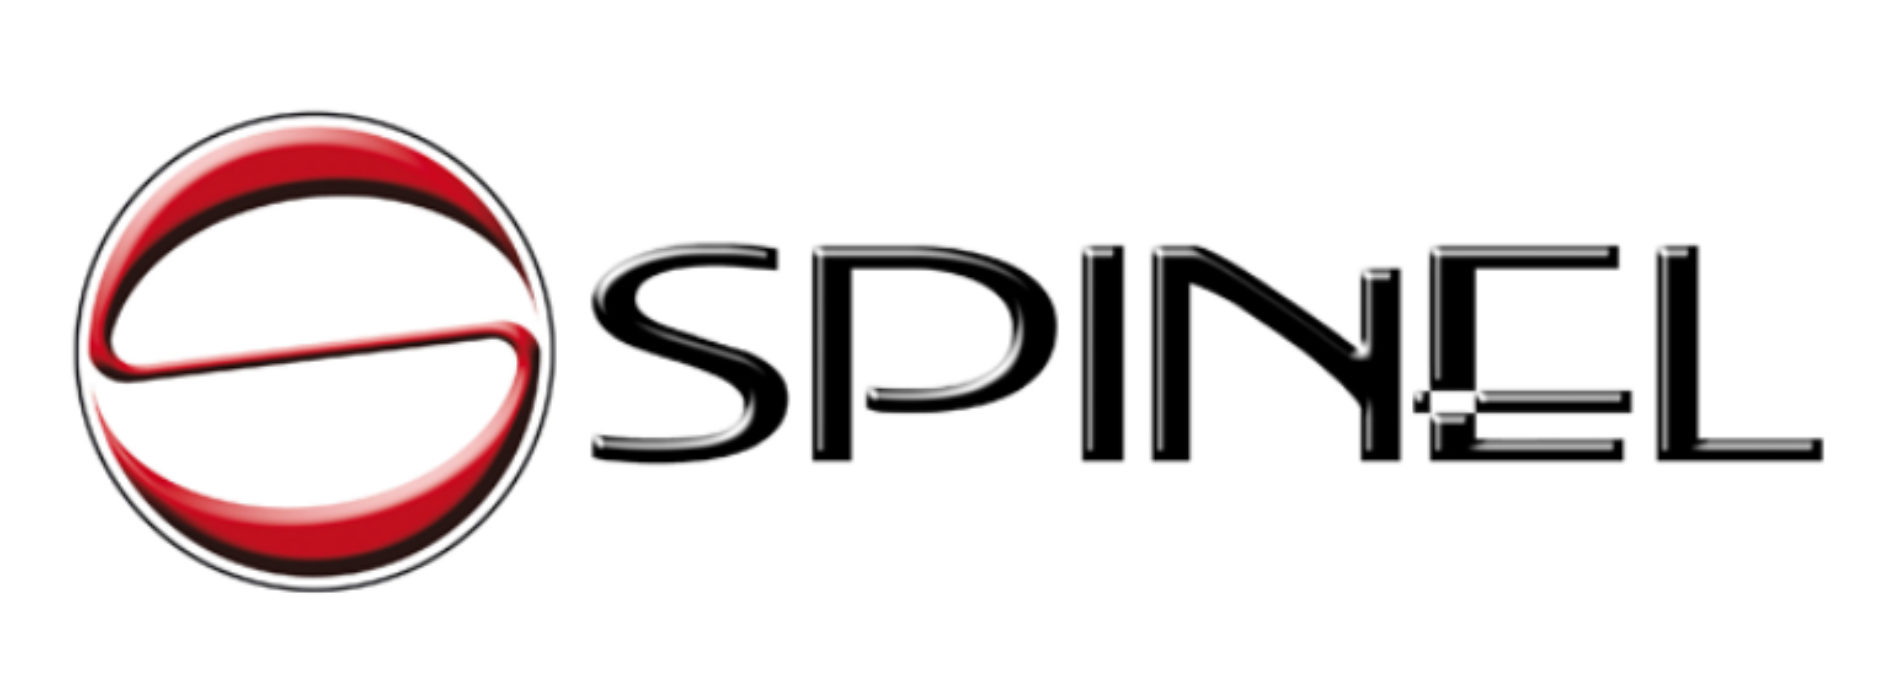 spinel-macchine-italiane-macchinette-per-espresso-cialde-capsule-pulizia-manutenzione